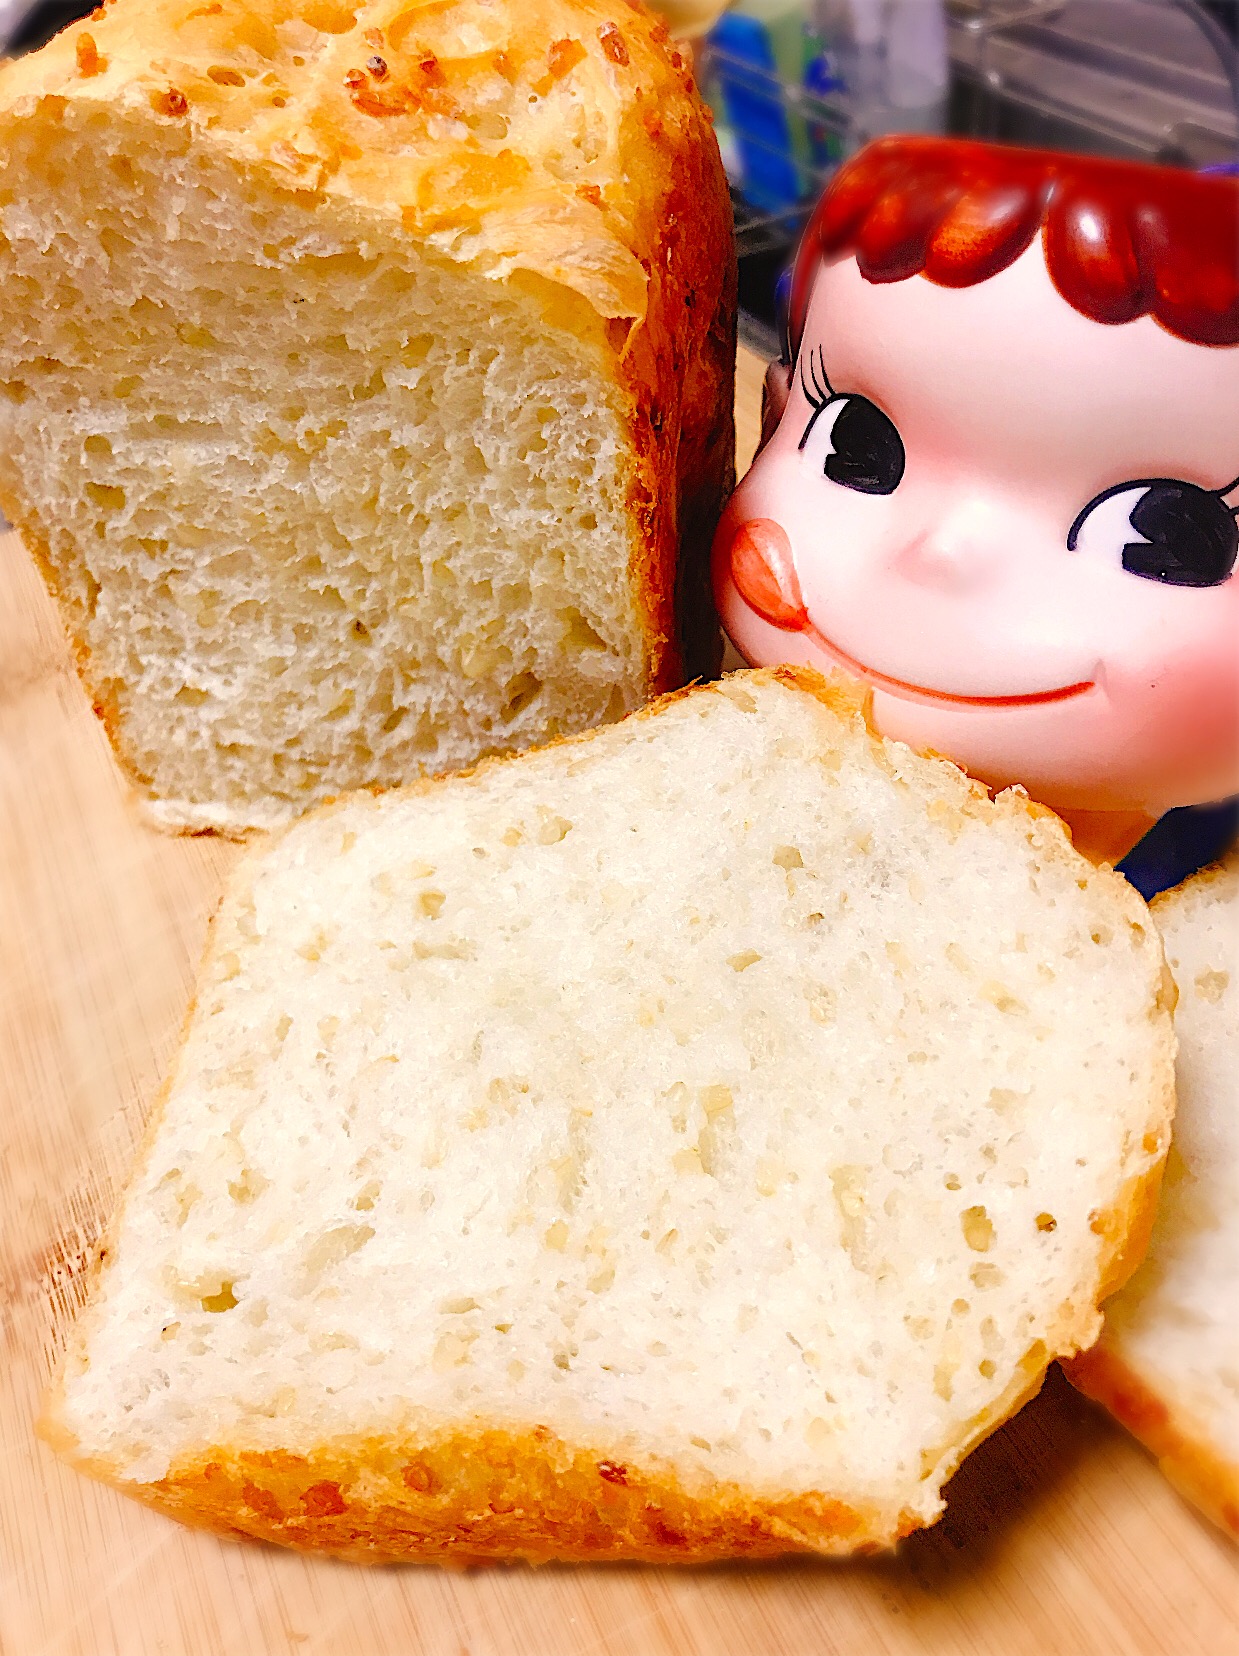 プチプチ食感が楽しい♡玄米フランスパン。